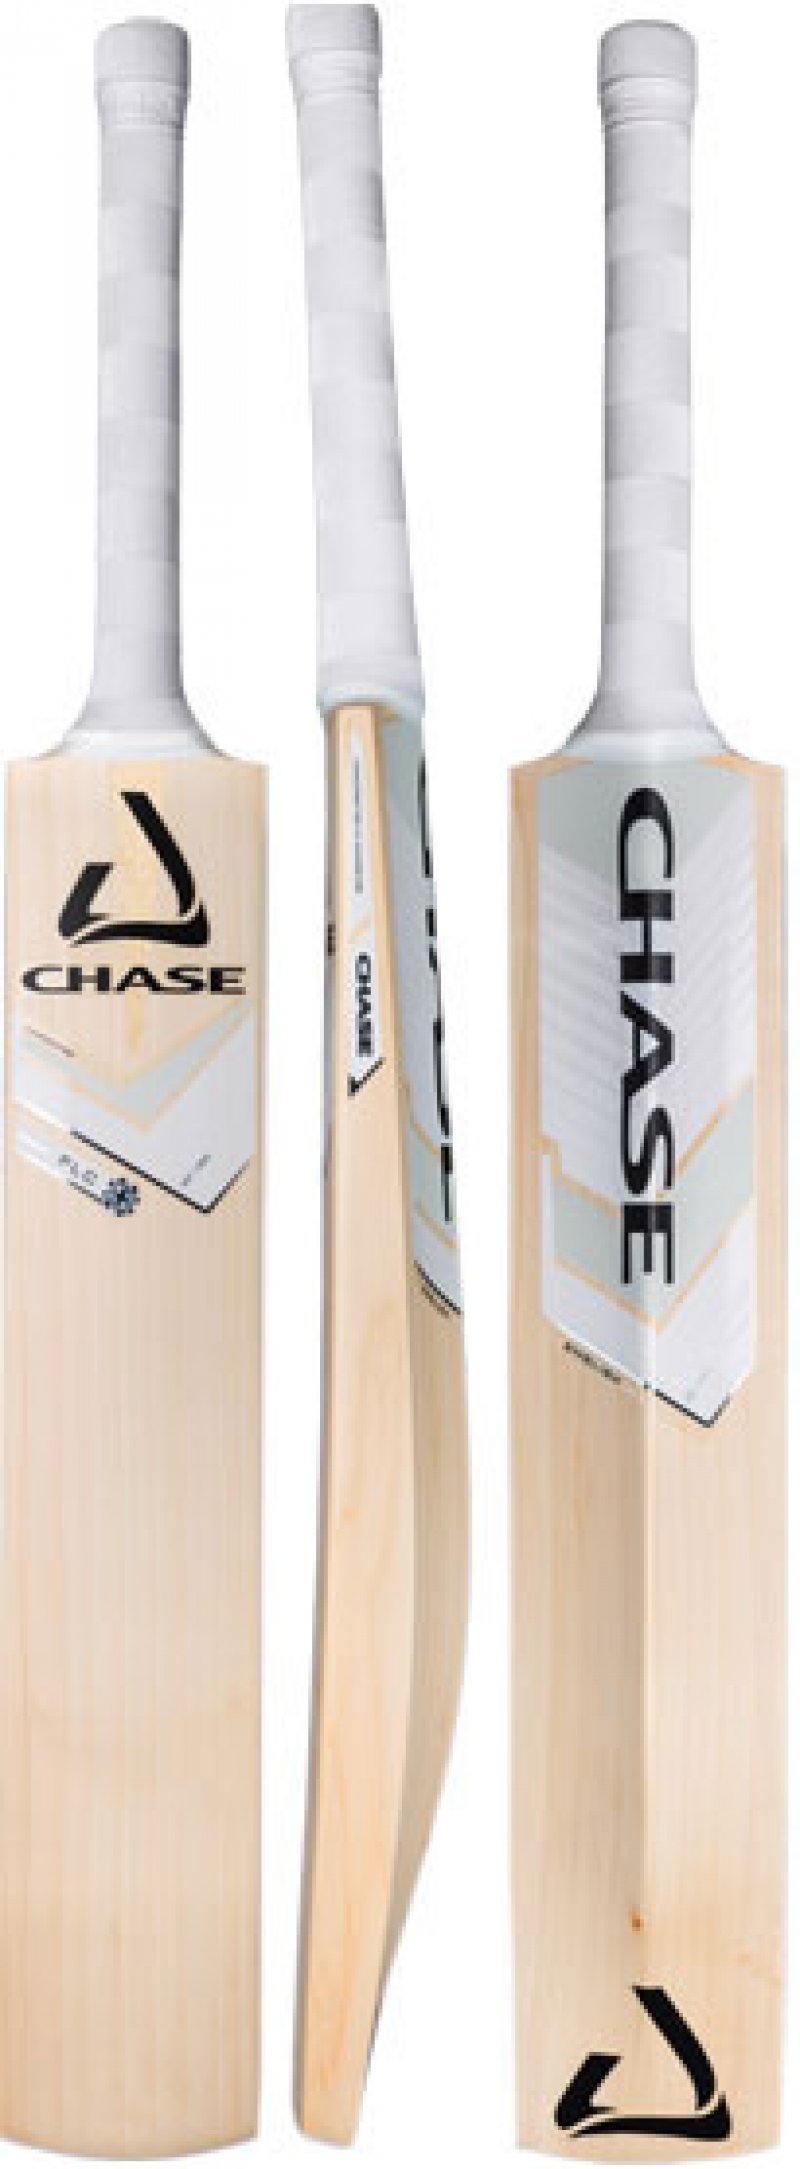 Chase Four Leaf Clover (FLC) Junior Cricket Bat